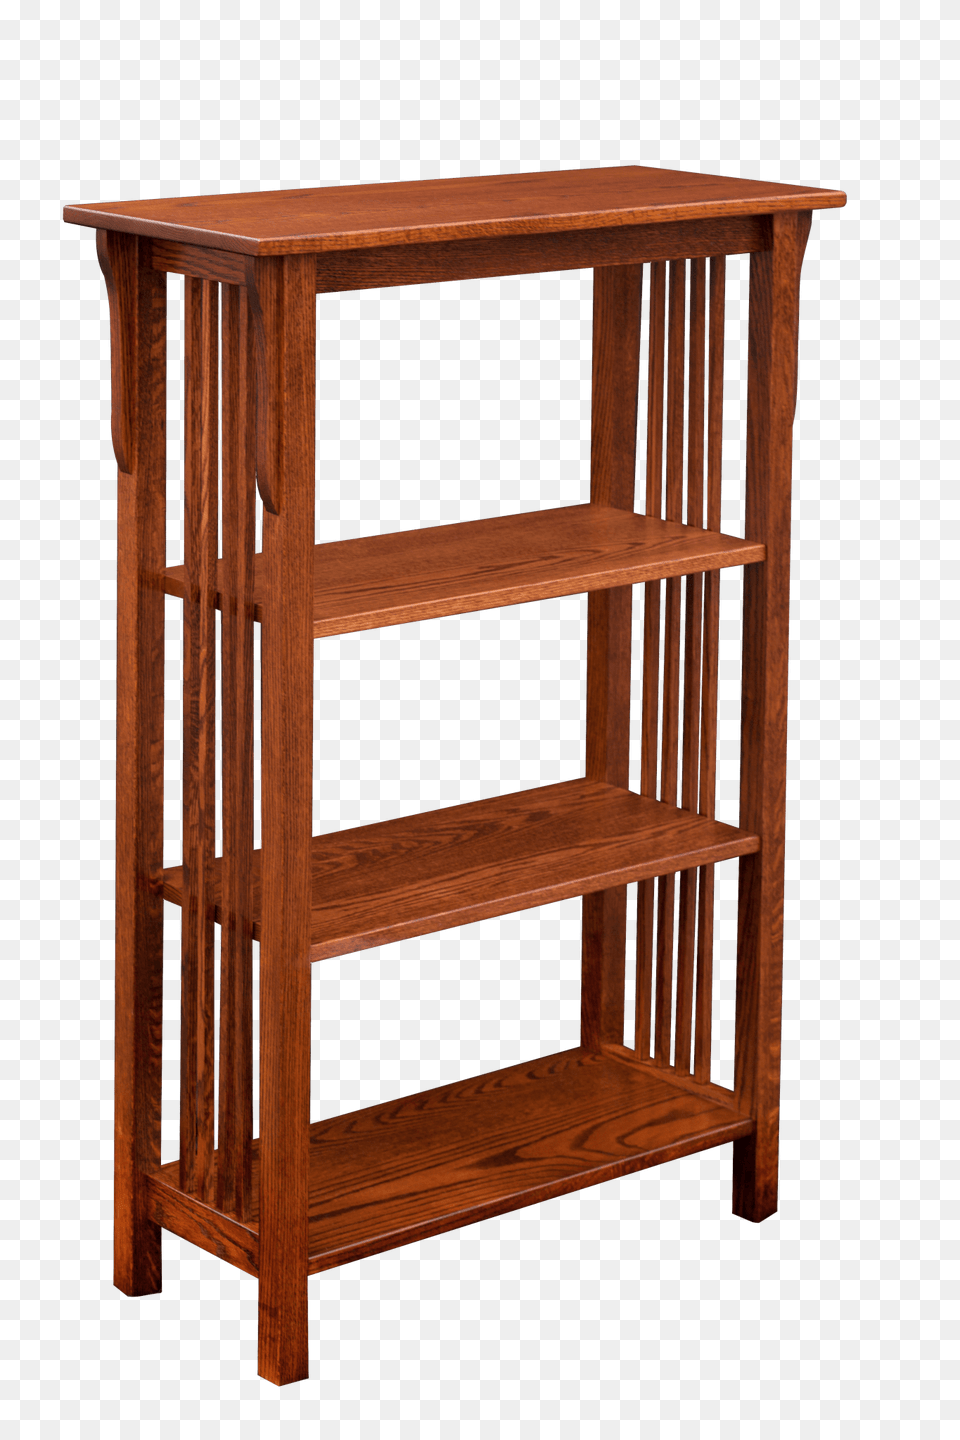 Bookshelves, Furniture, Hardwood, Wood, Crib Png Image